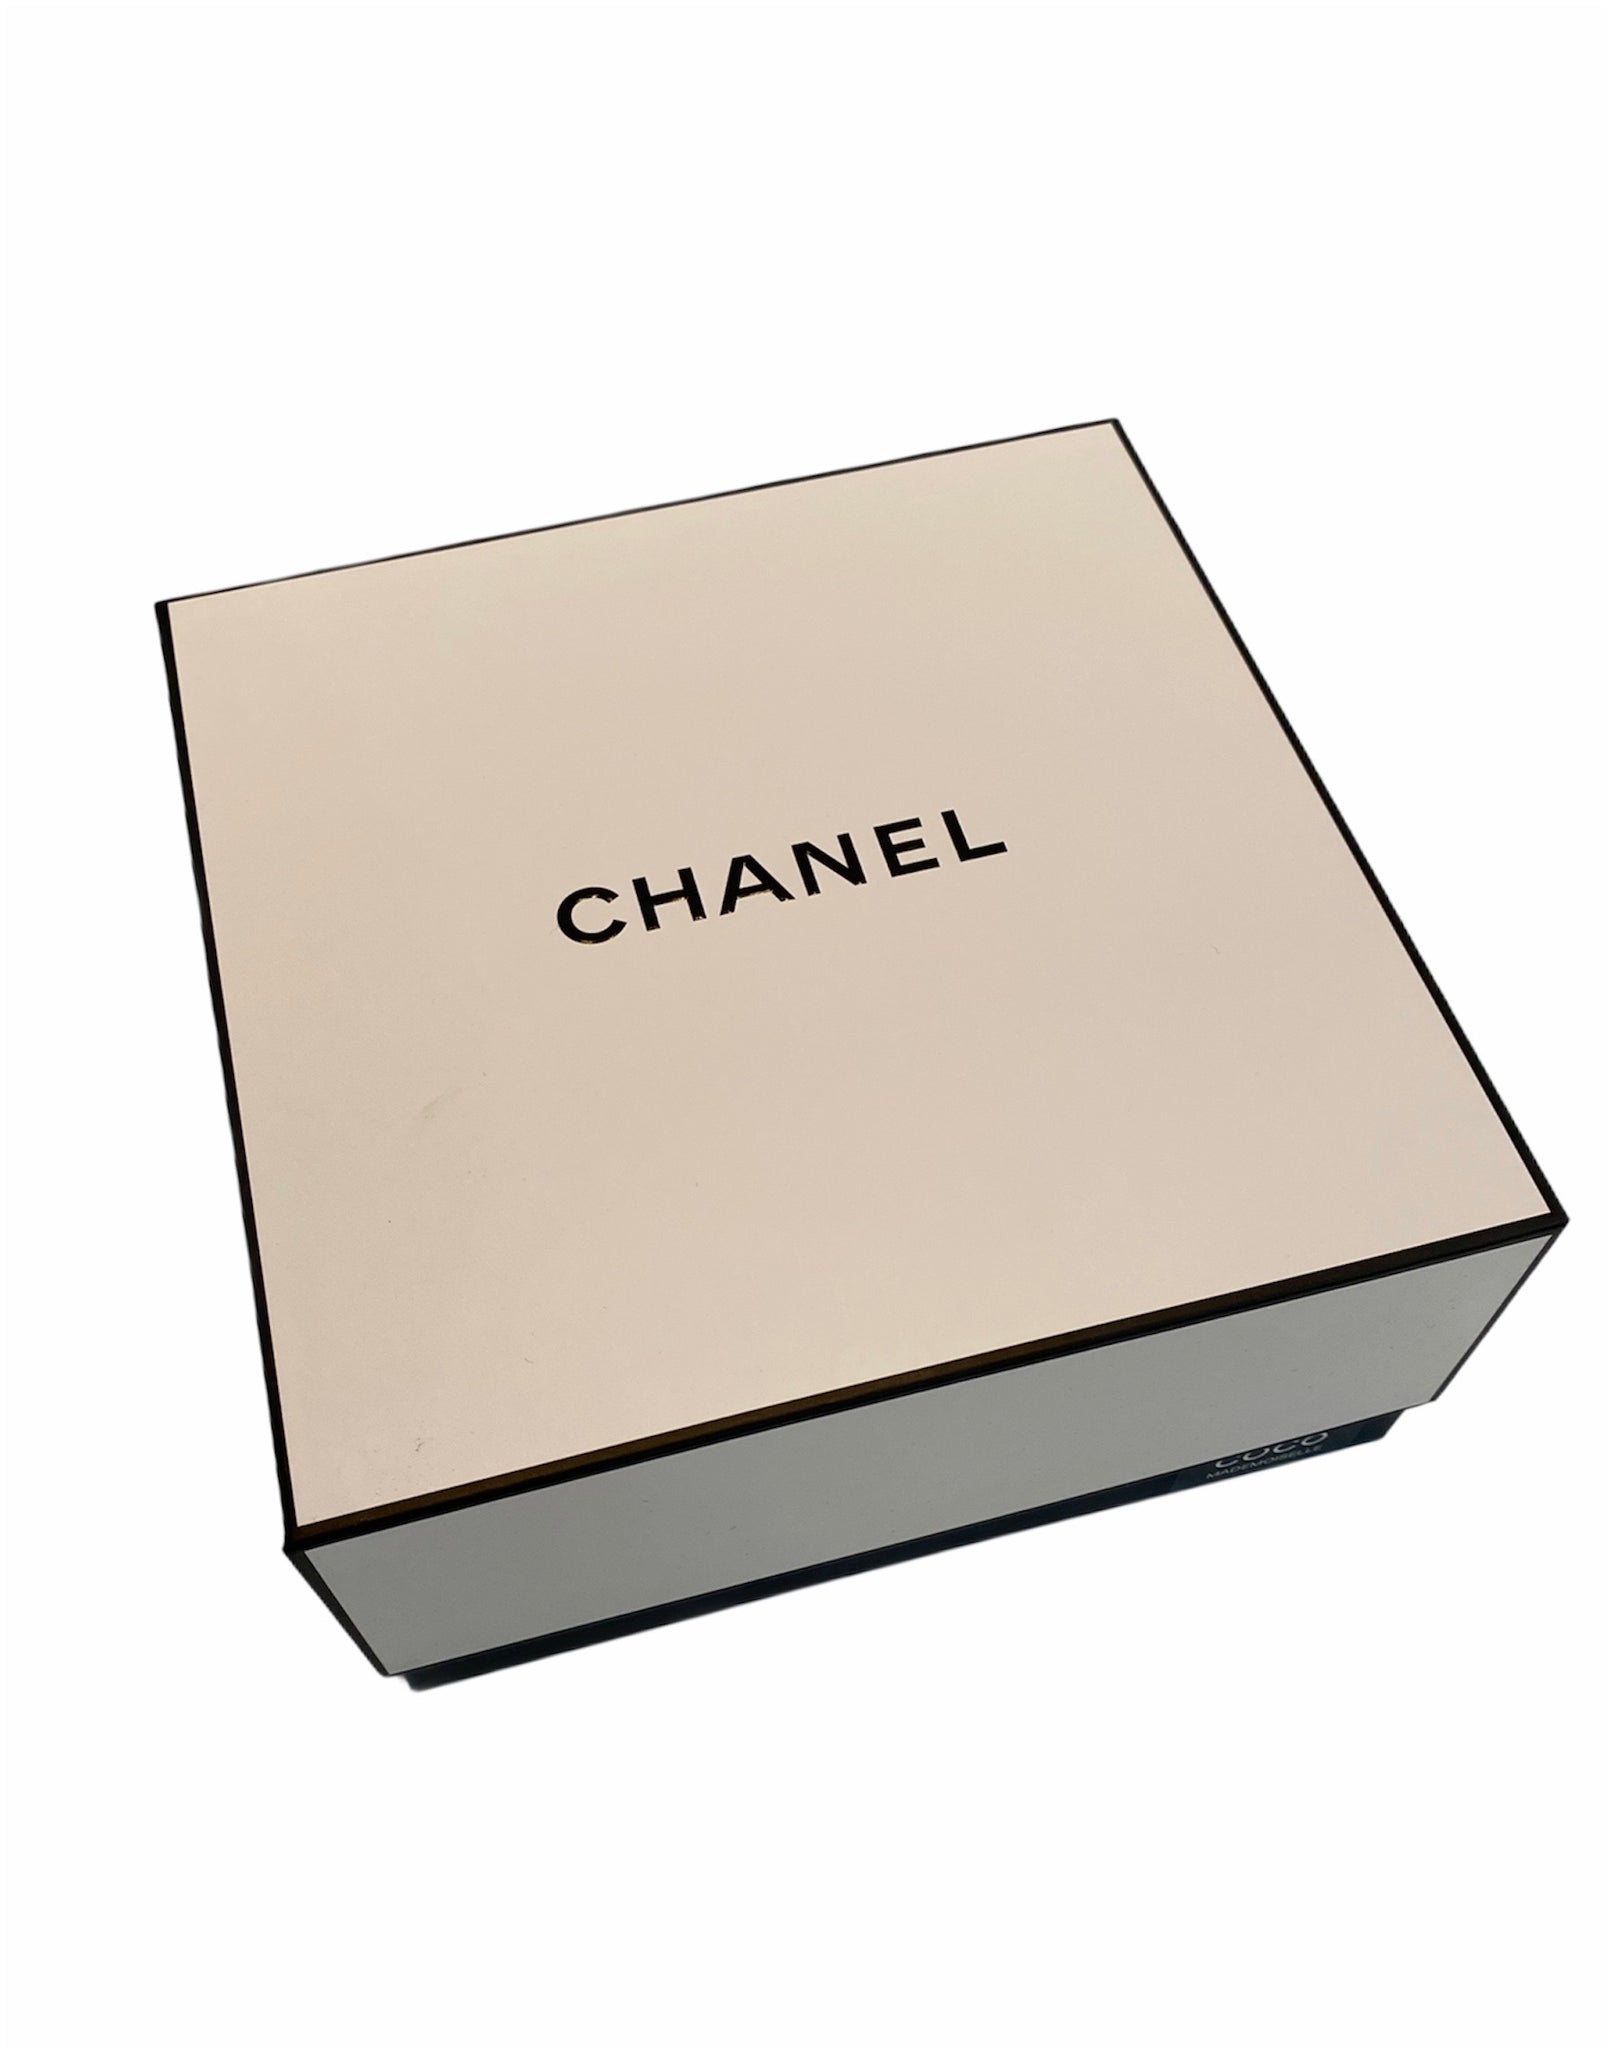 Chanel Chance Eau Tendre 2 Pcs Gift Set Eau de Toilette 3.4oz